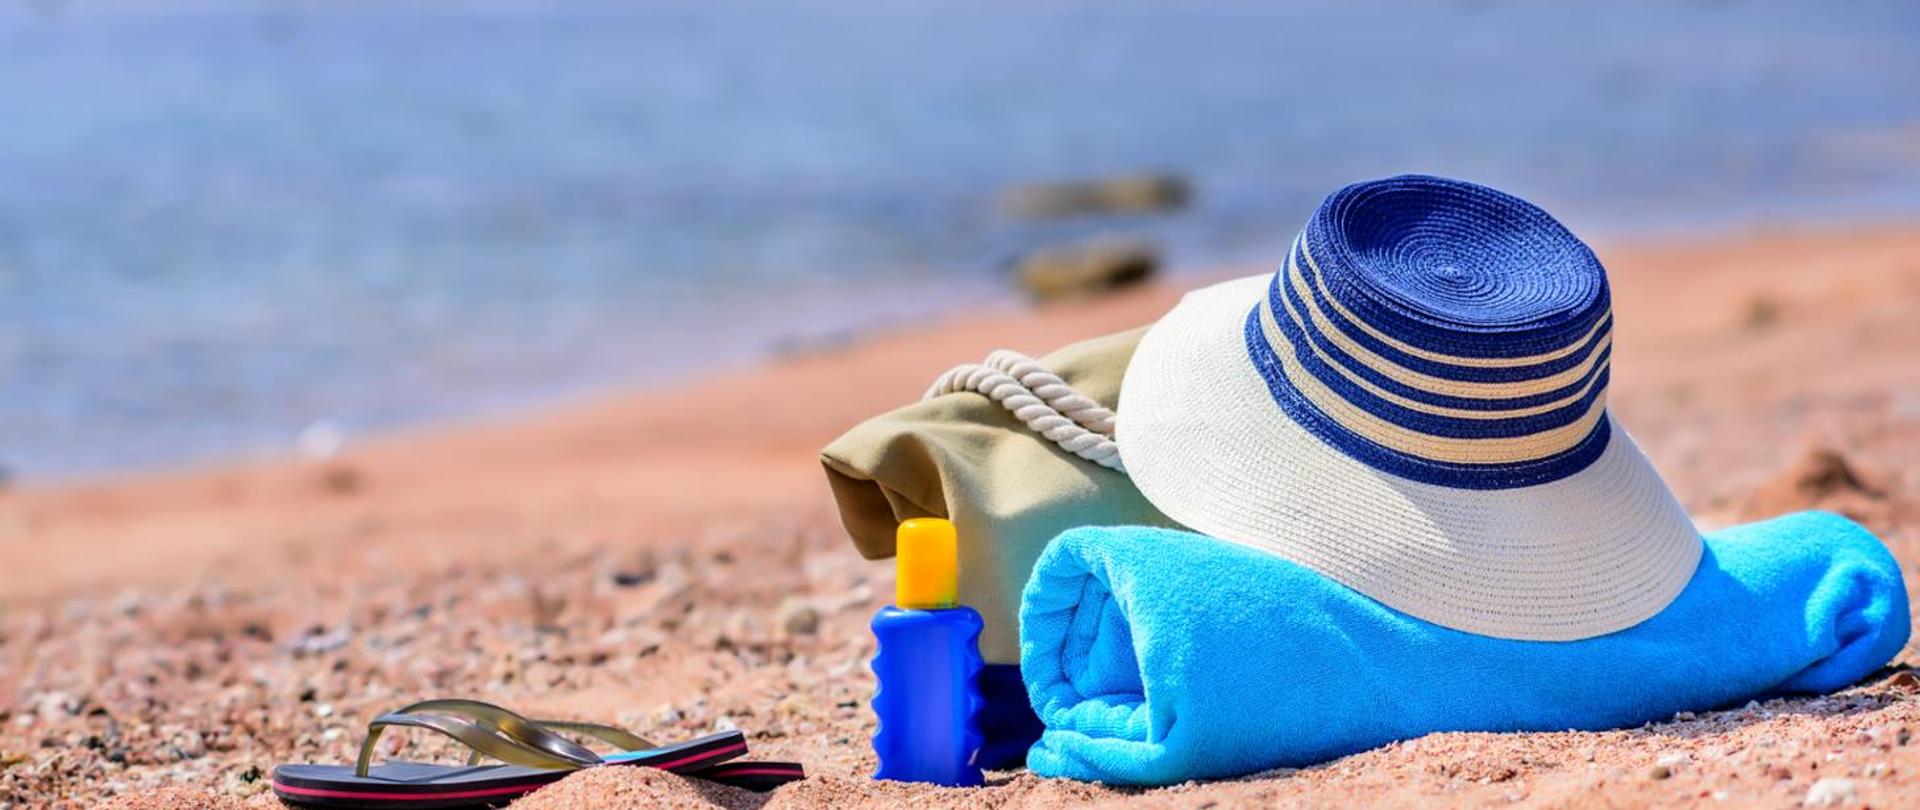 na plaży niebieski ręcznik kapelusz klapki torba i olejek do oplalania